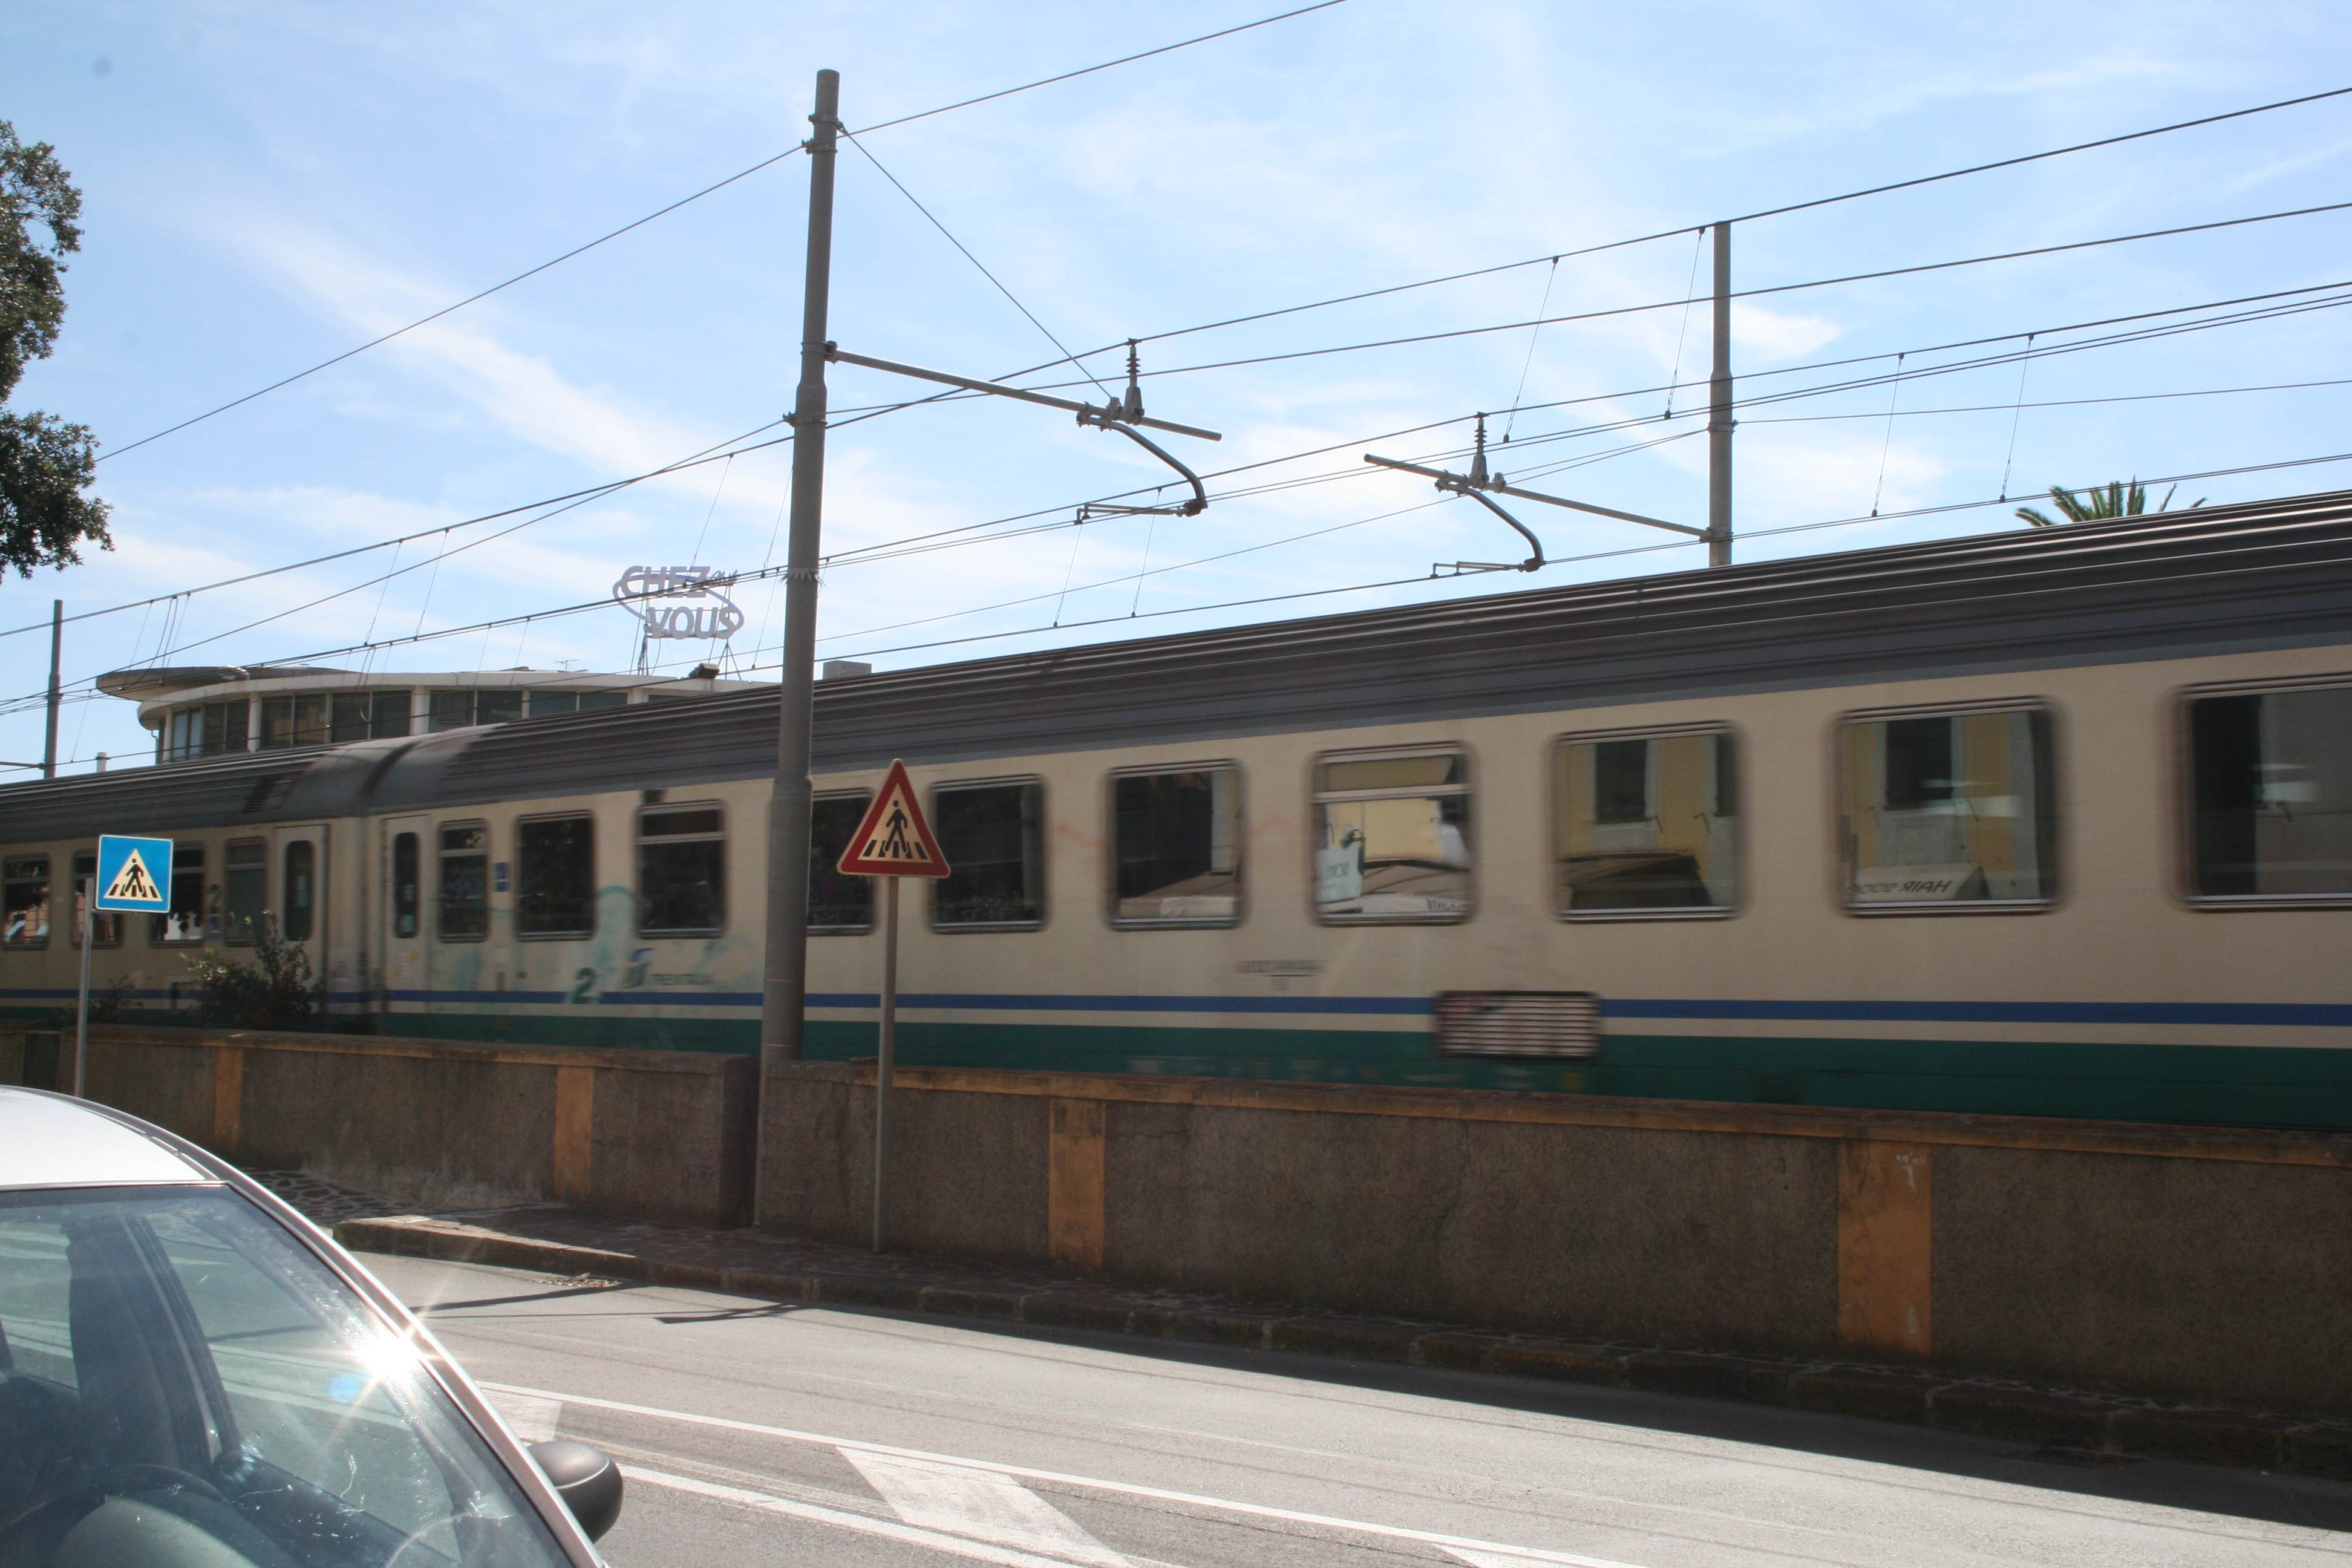 Circolazione ferroviaria sospesa tra Corniglia e La Spezia